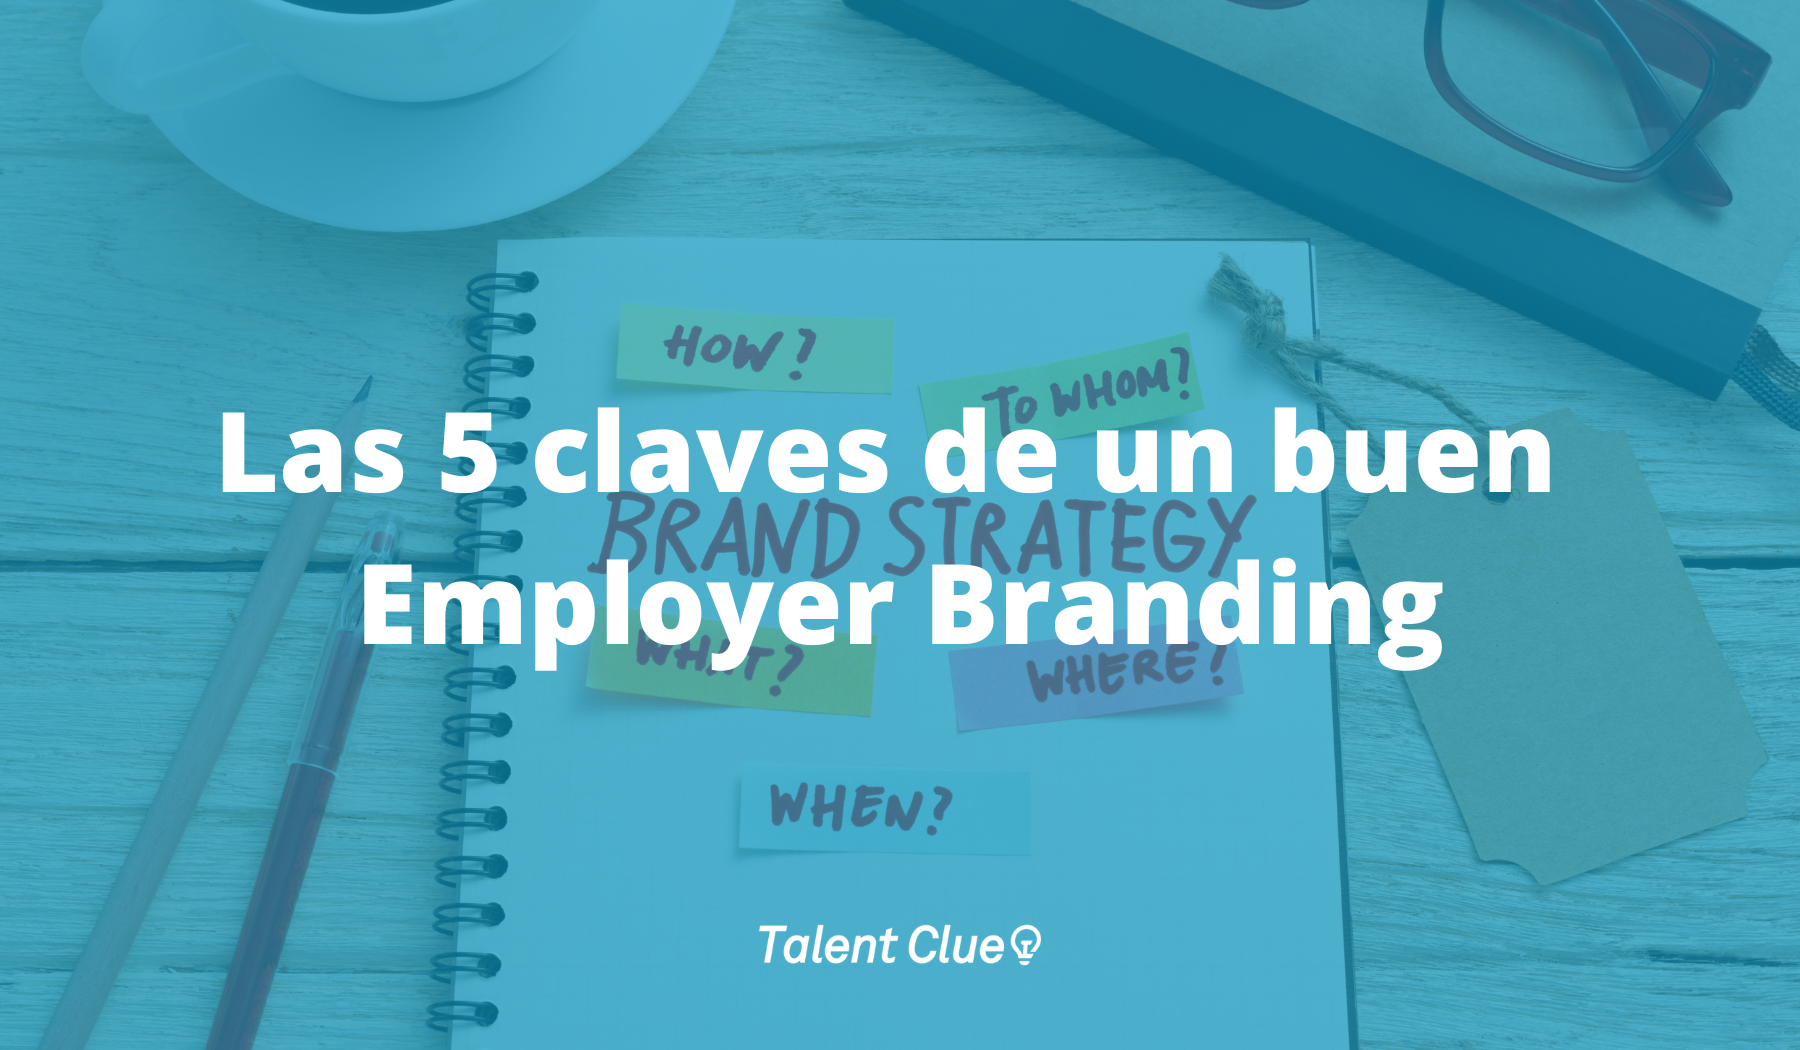 Las 5 claves de un buen Employer Branding